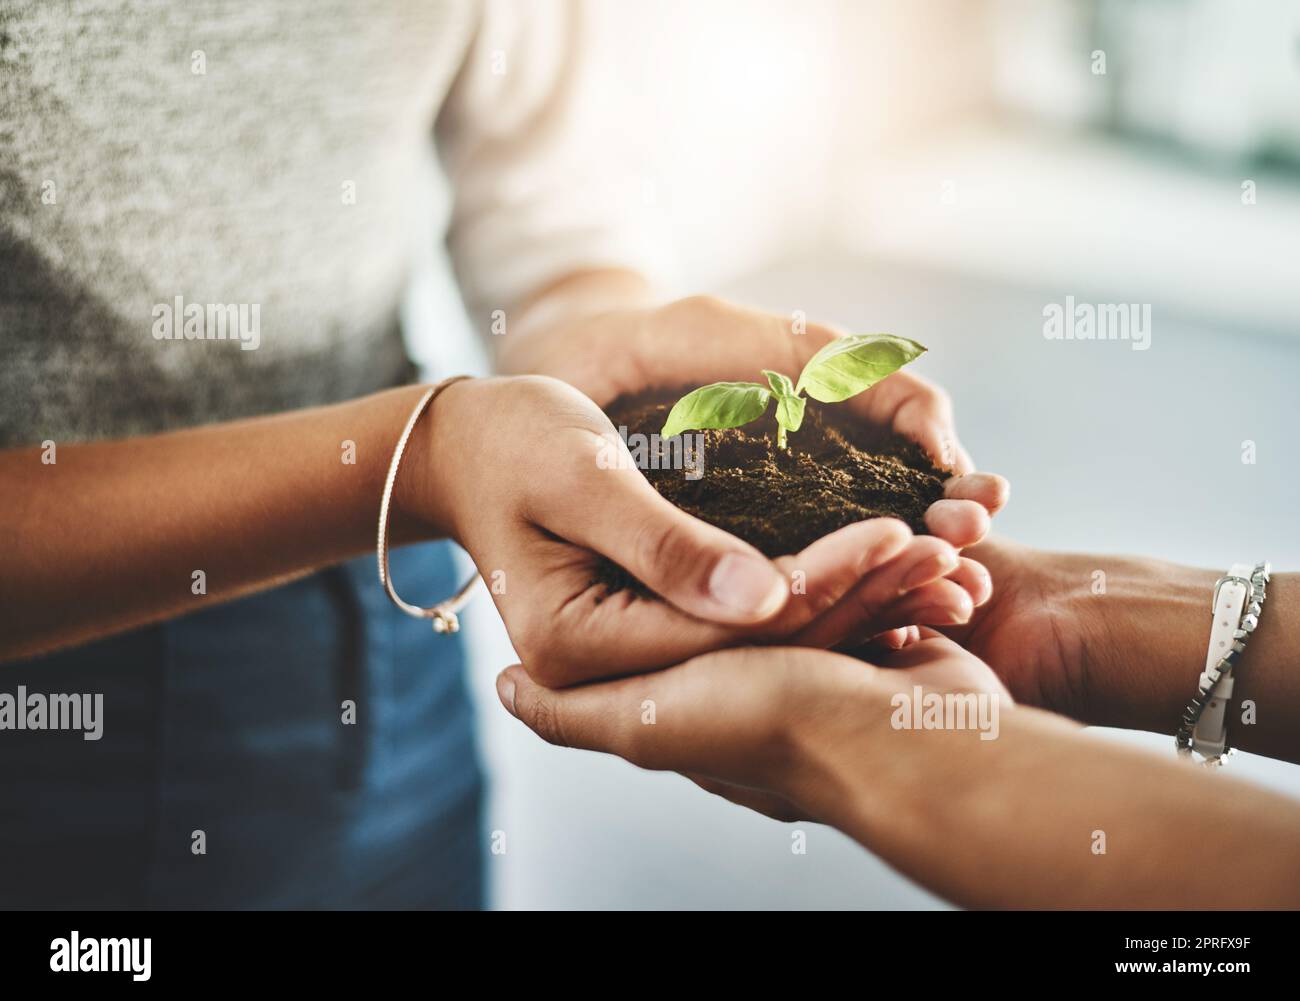 Nahaufnahme von Händen, die organische Pflanzen halten, um die CO2-Bilanz durch Ökologie zu reduzieren und gemeinsam umweltfreundlich zu sein. Freunde, die saubere Energie, einen nachhaltigen Lebensstil und grünes Laub begrüßen Stockfoto